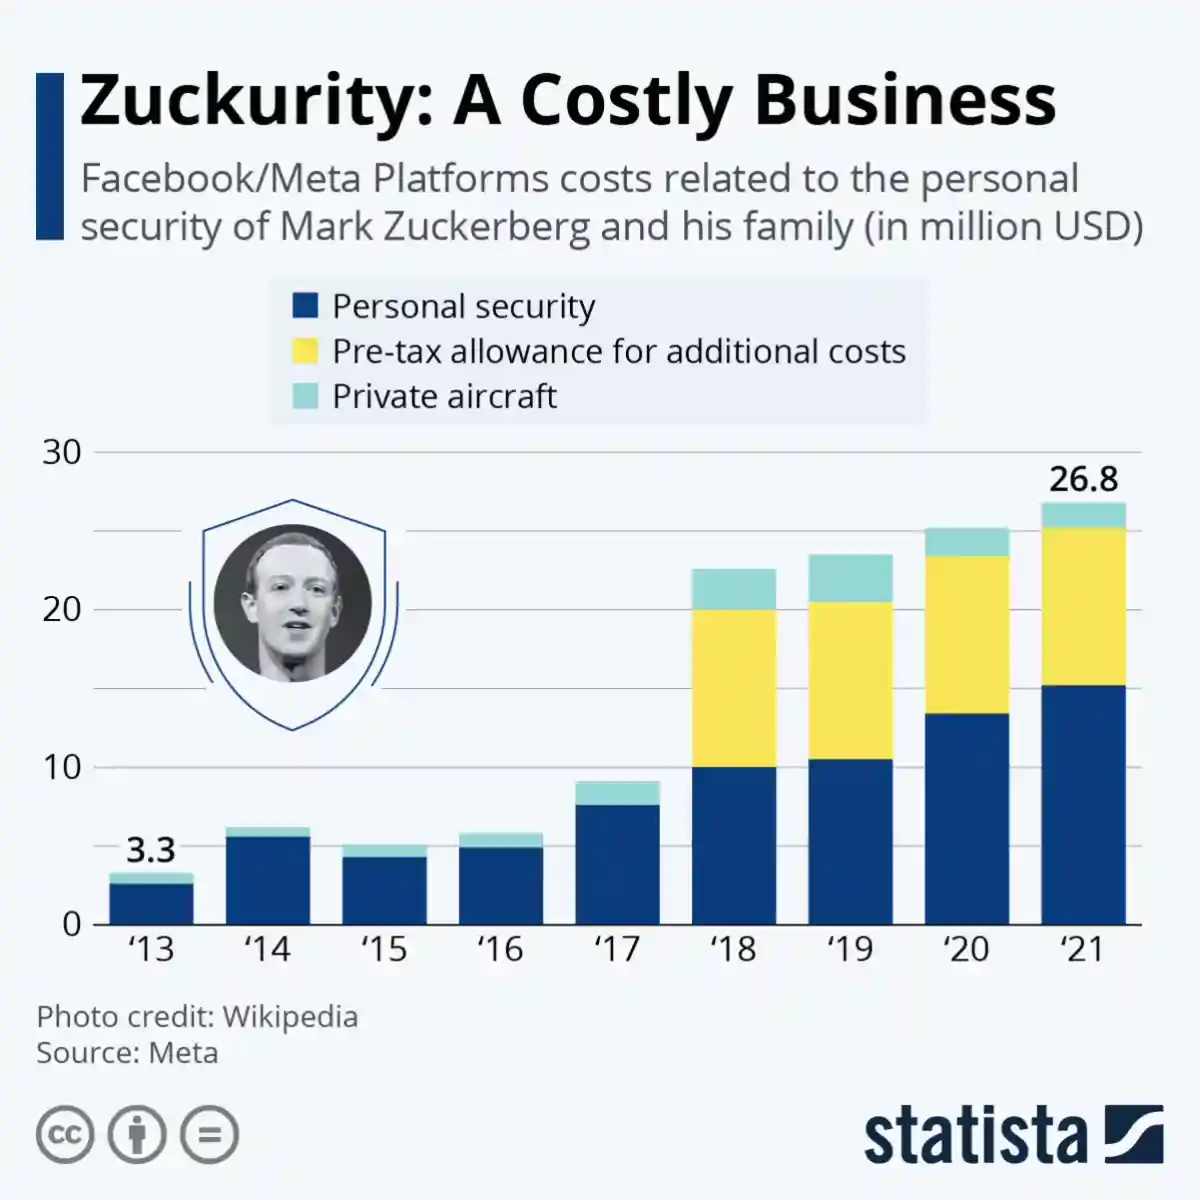 «Zuckurity: Дорогостоящий бизнес». Изображение: statista.com 